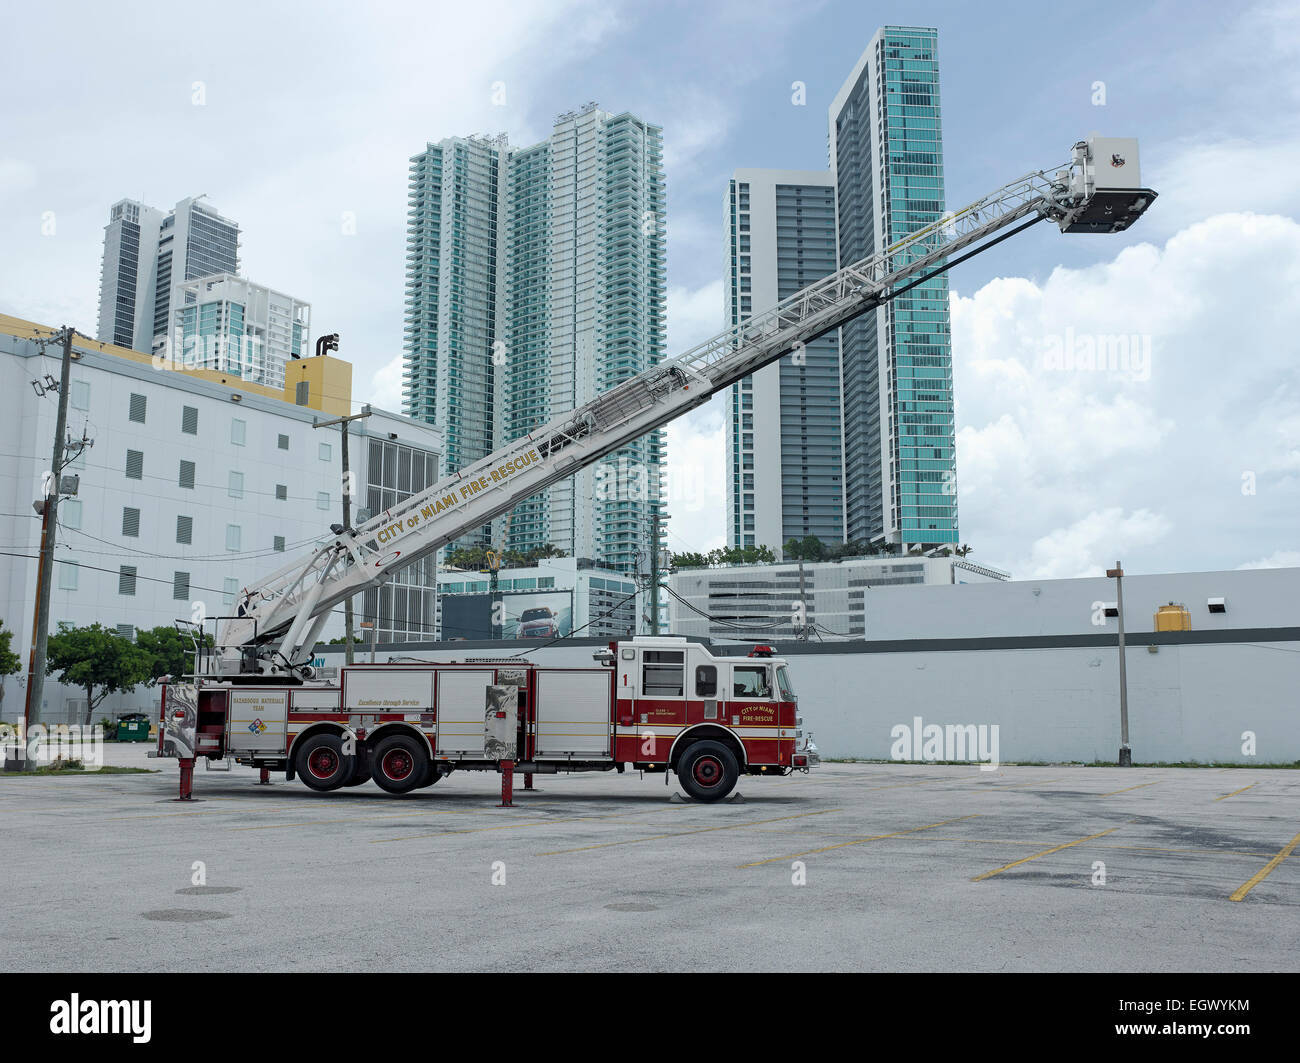 Camión de bomberos escalera aérea Foto de stock